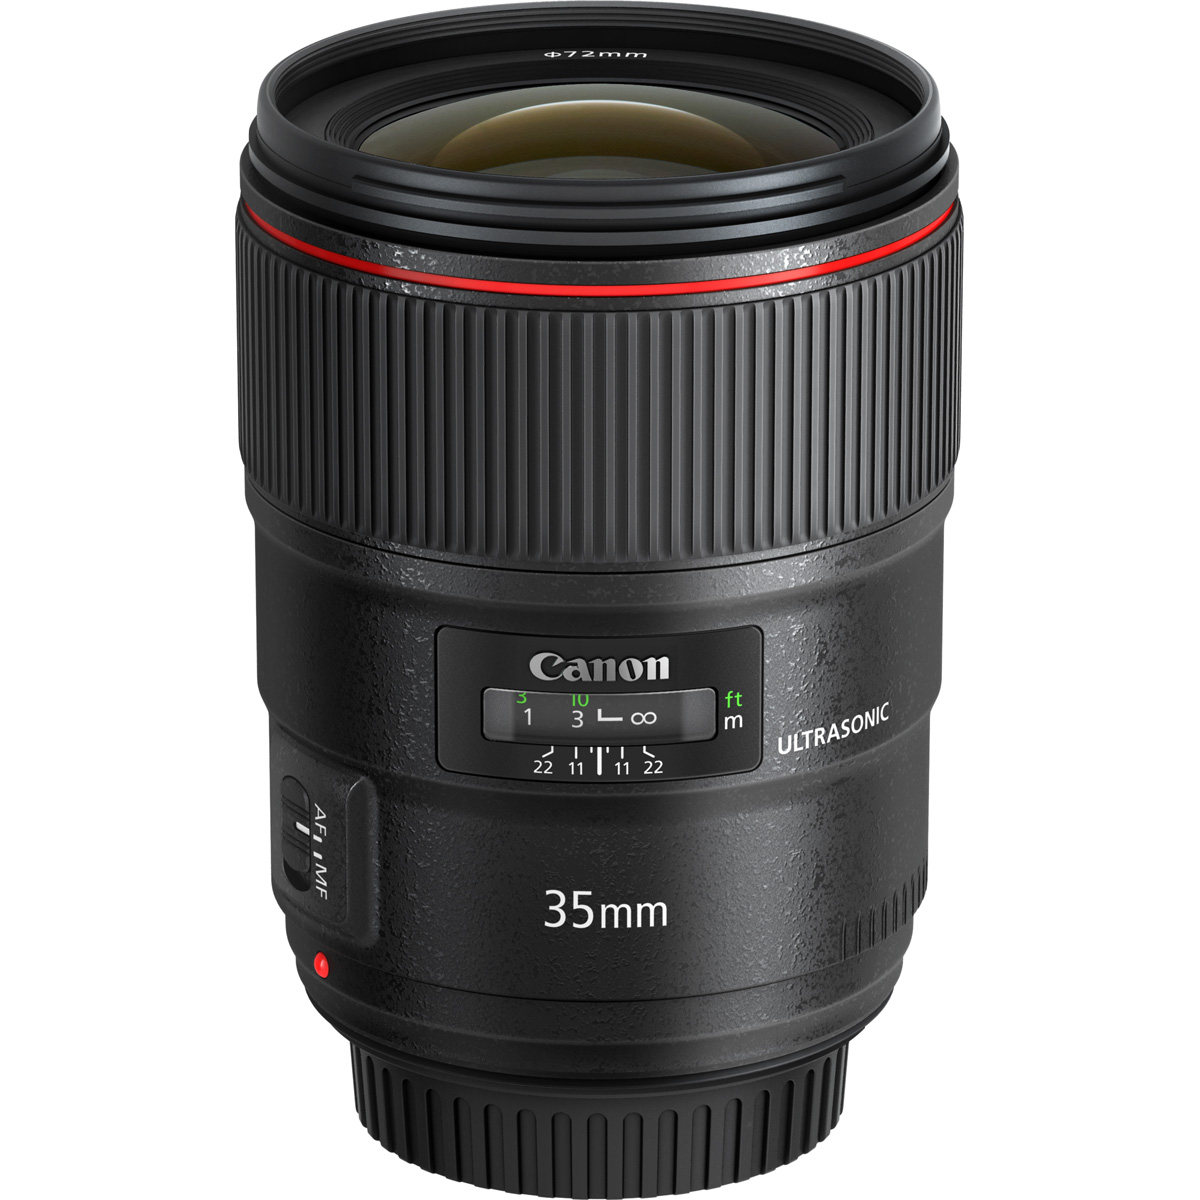 Canon 35mm f/1.4L II USM Lens